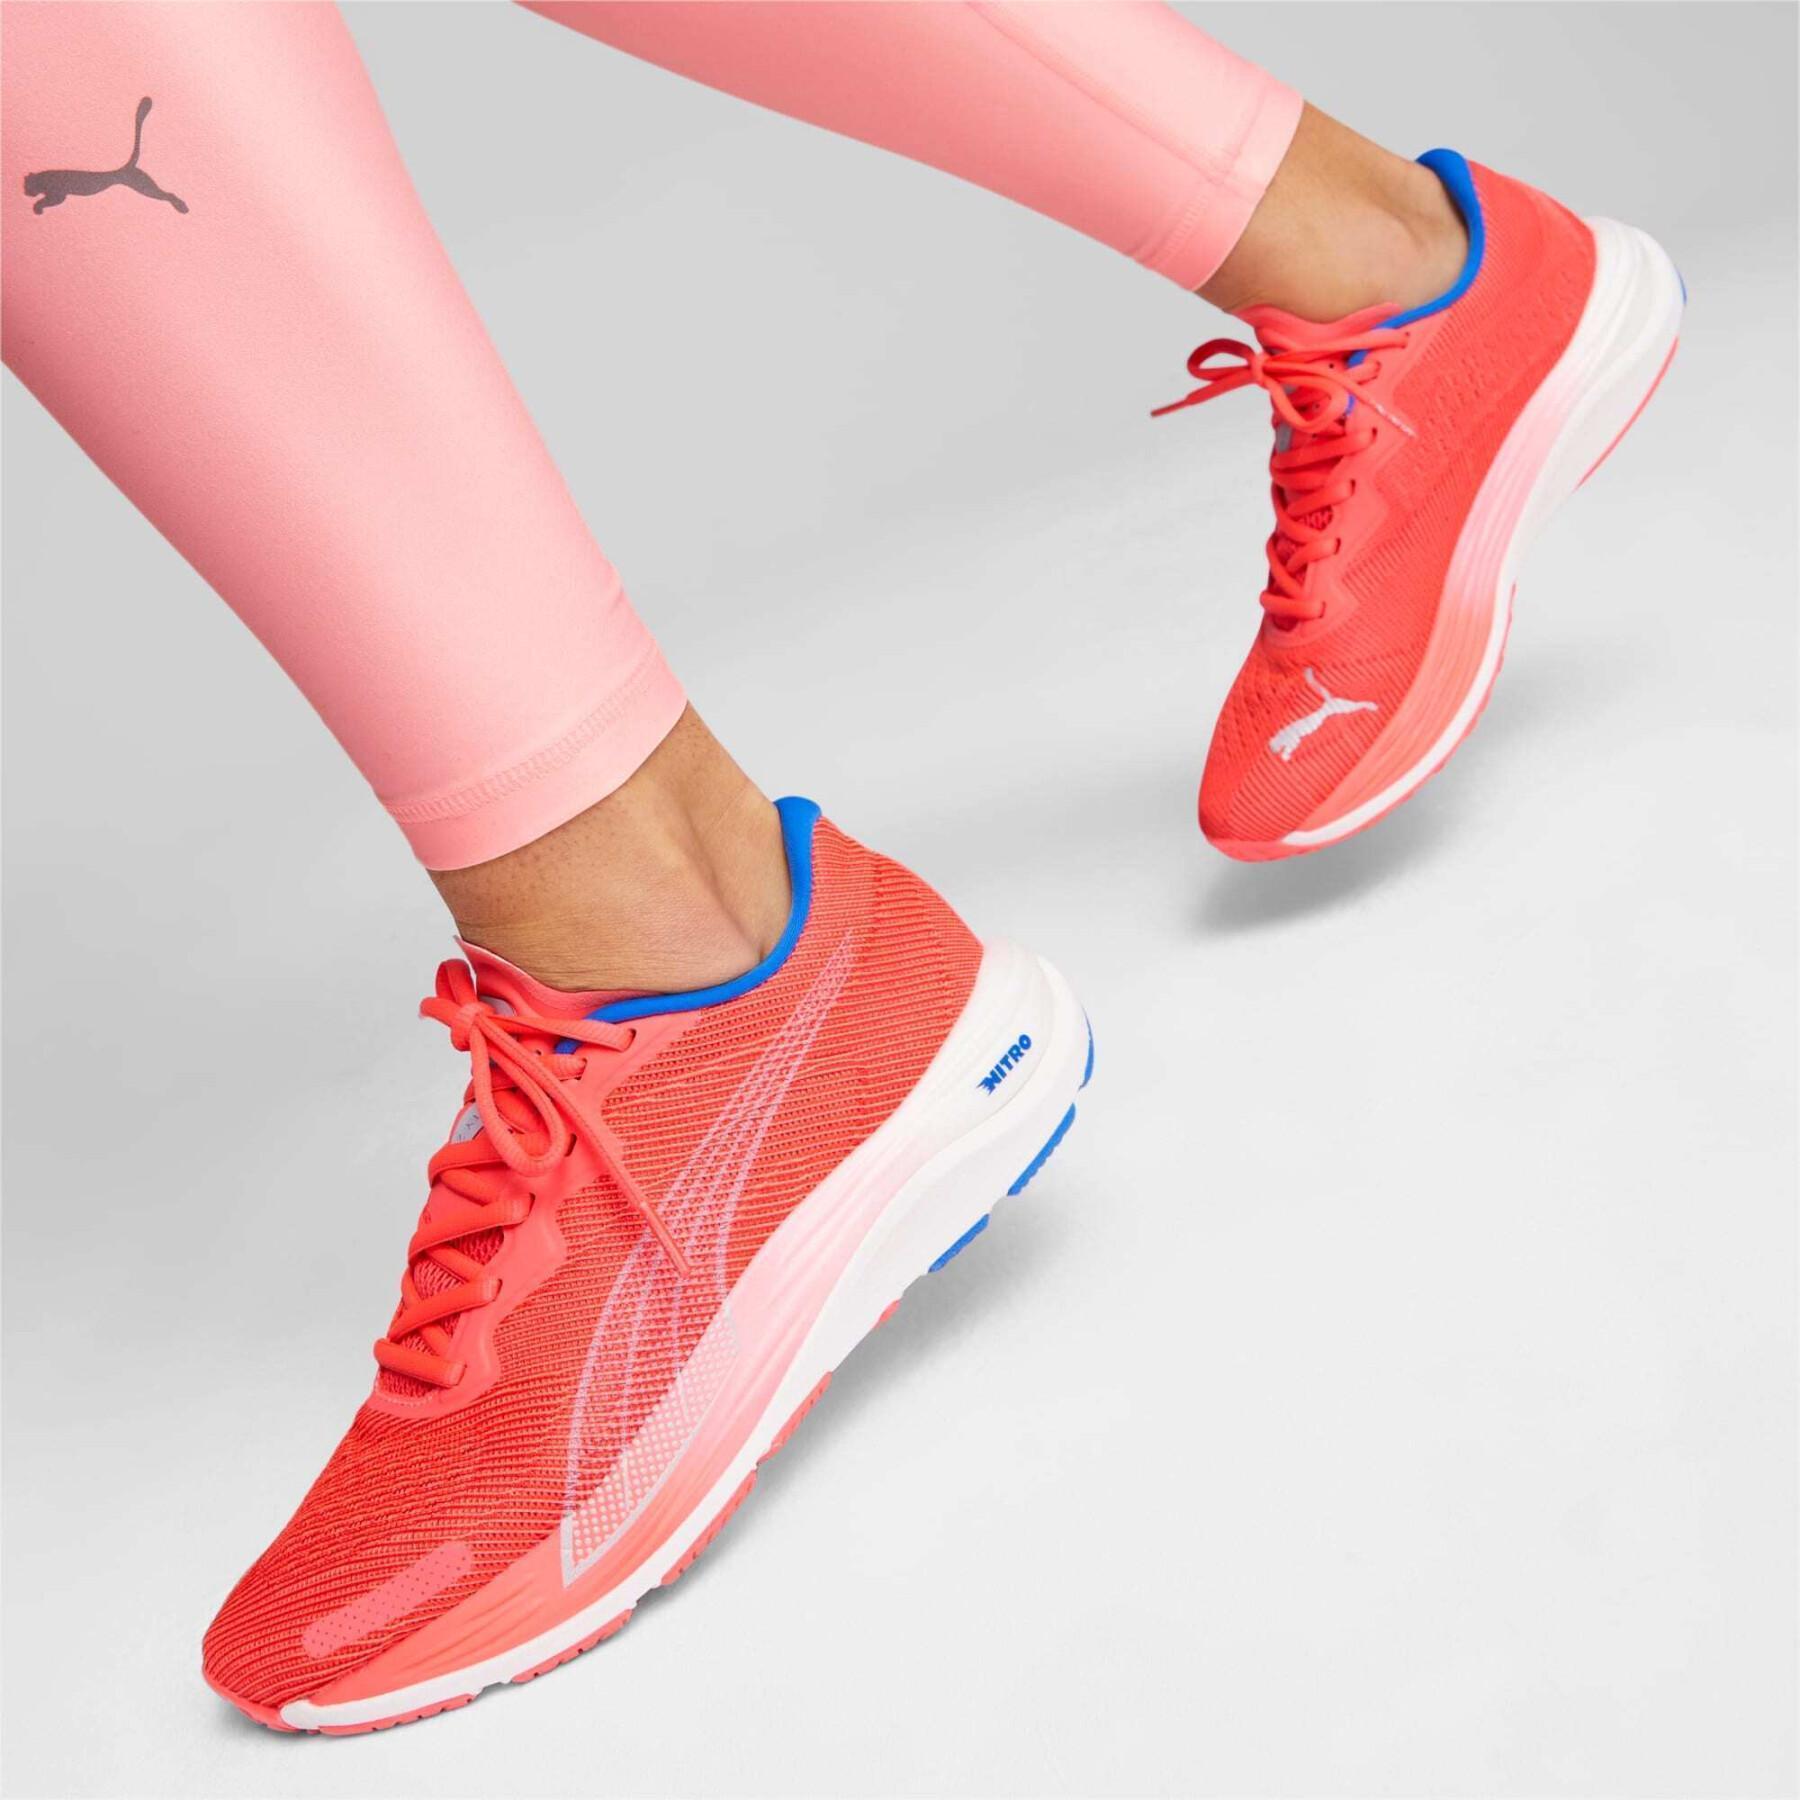 Women's running shoes Puma Velocity Nitro 2